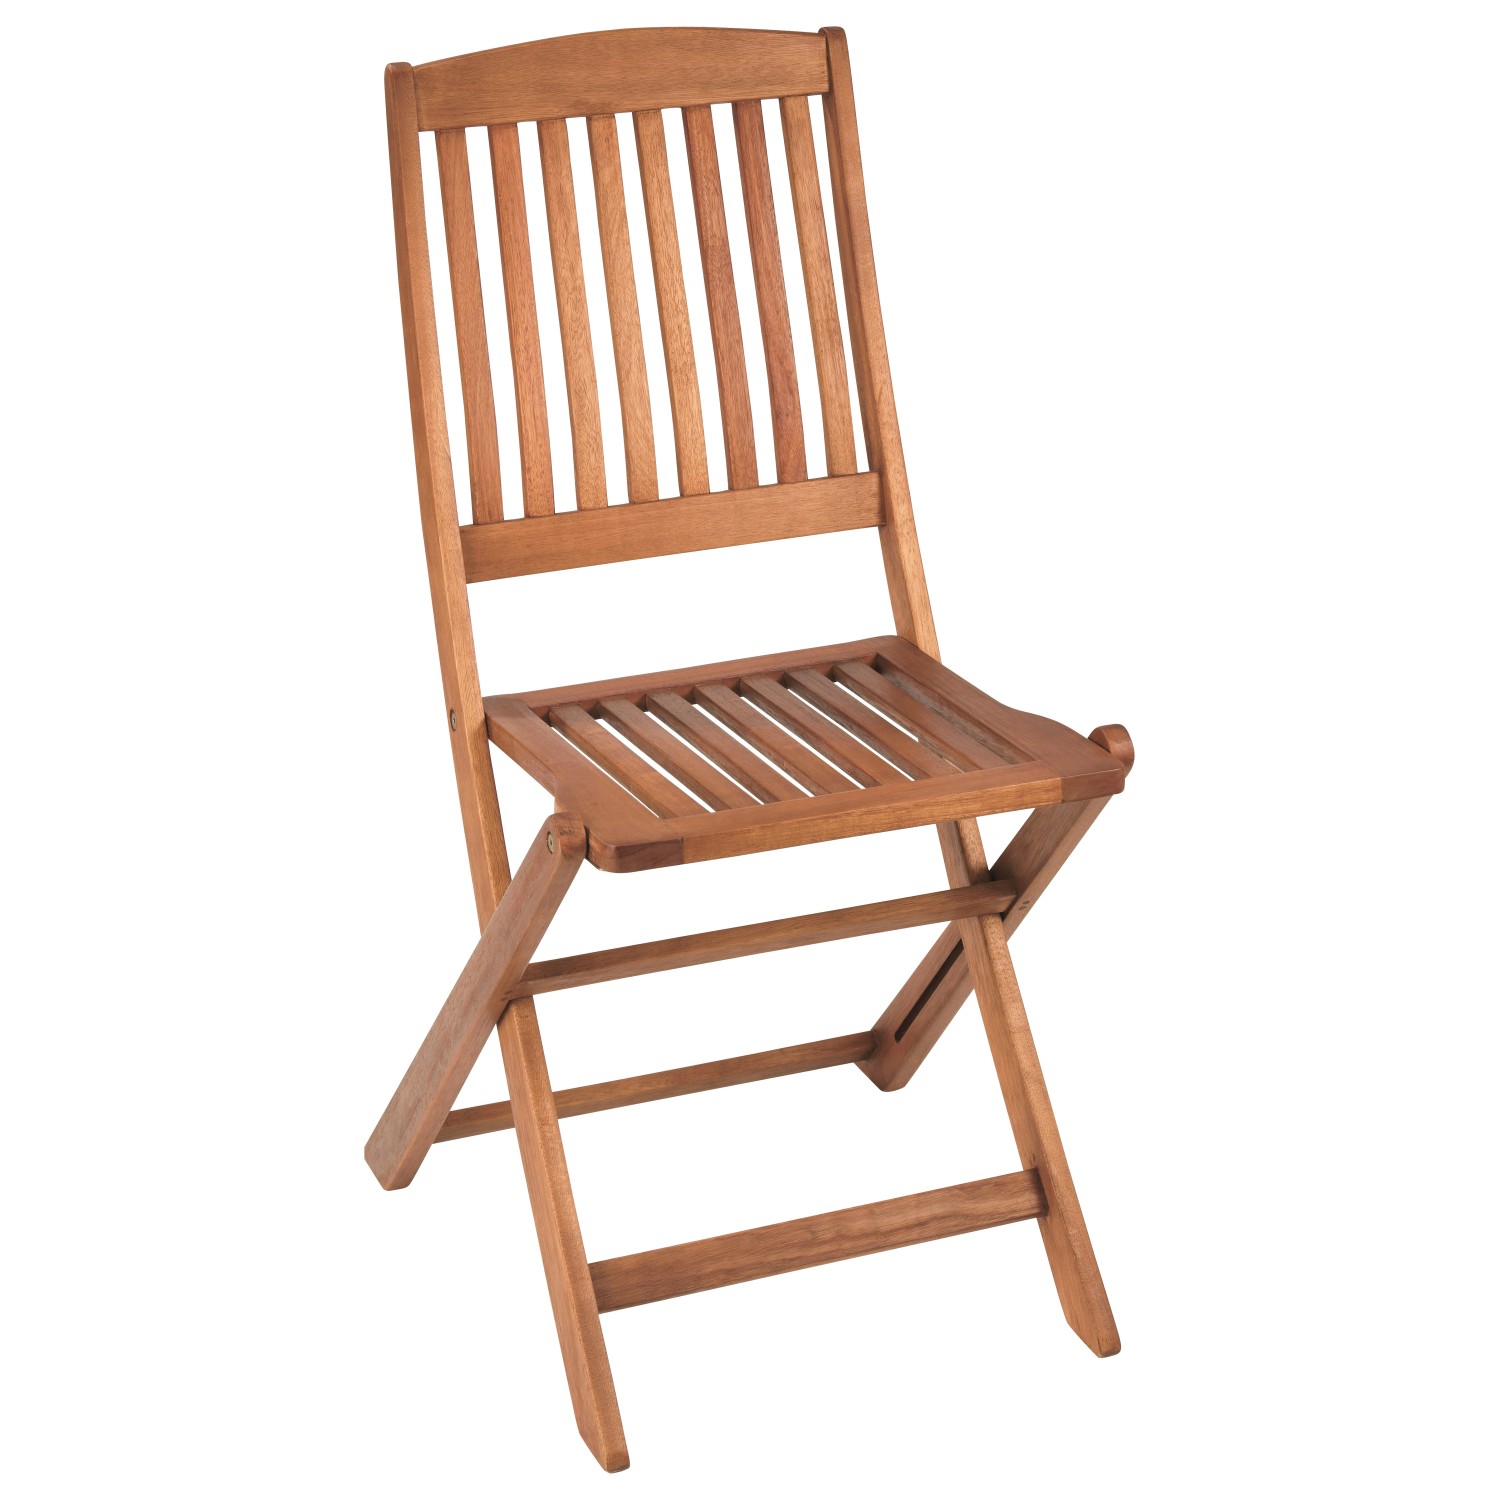 Стулья дачные складные. Greenville кресло садовое. Кресло складное Kingsbury 577х540мм натуральный массив эвкалипта. Кресло складное Greenville эвкалипт. Кресло складное Panaca.